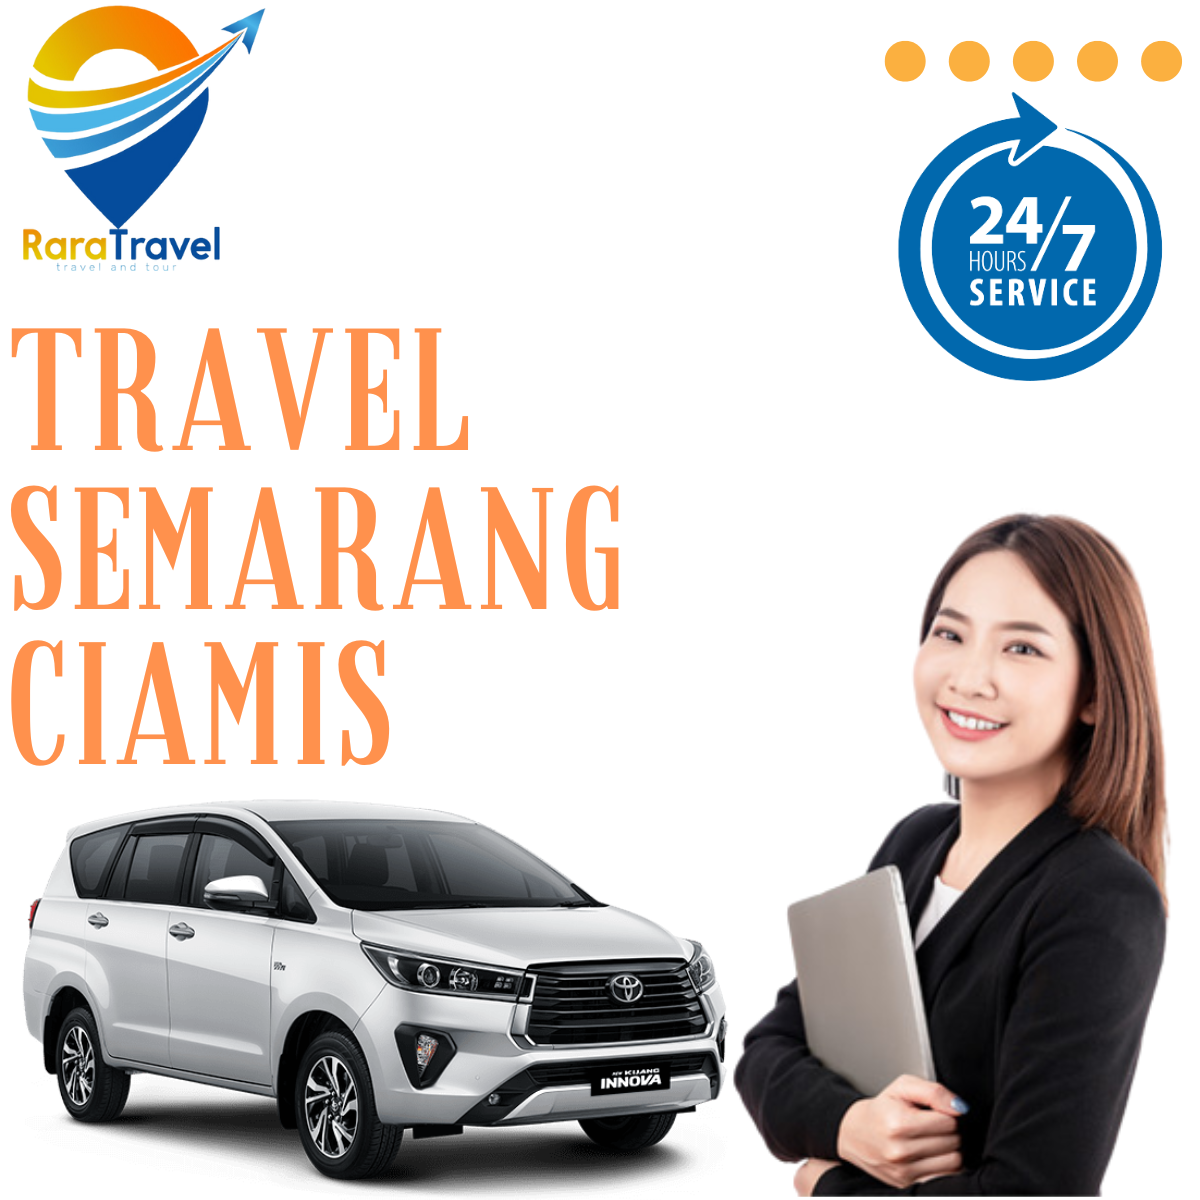 Travel Semarang Ciamis PP Murah - RARATRAVEL.ID